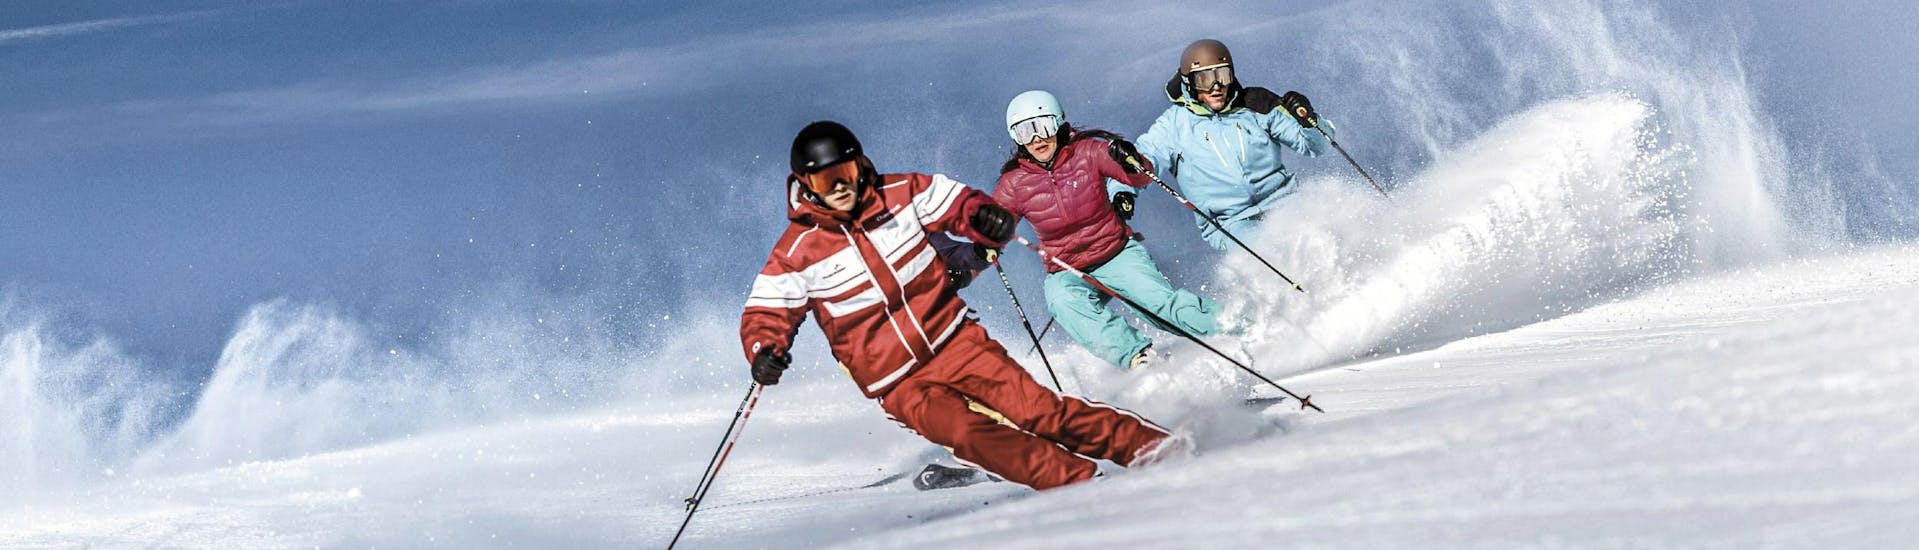 Beim Skikurs für Erwachsene aller Levels der Skischule Schruns üben die Teilnehmer unter Anleitung eines erfahrenen Skilehrers ihre Carving-Technik.